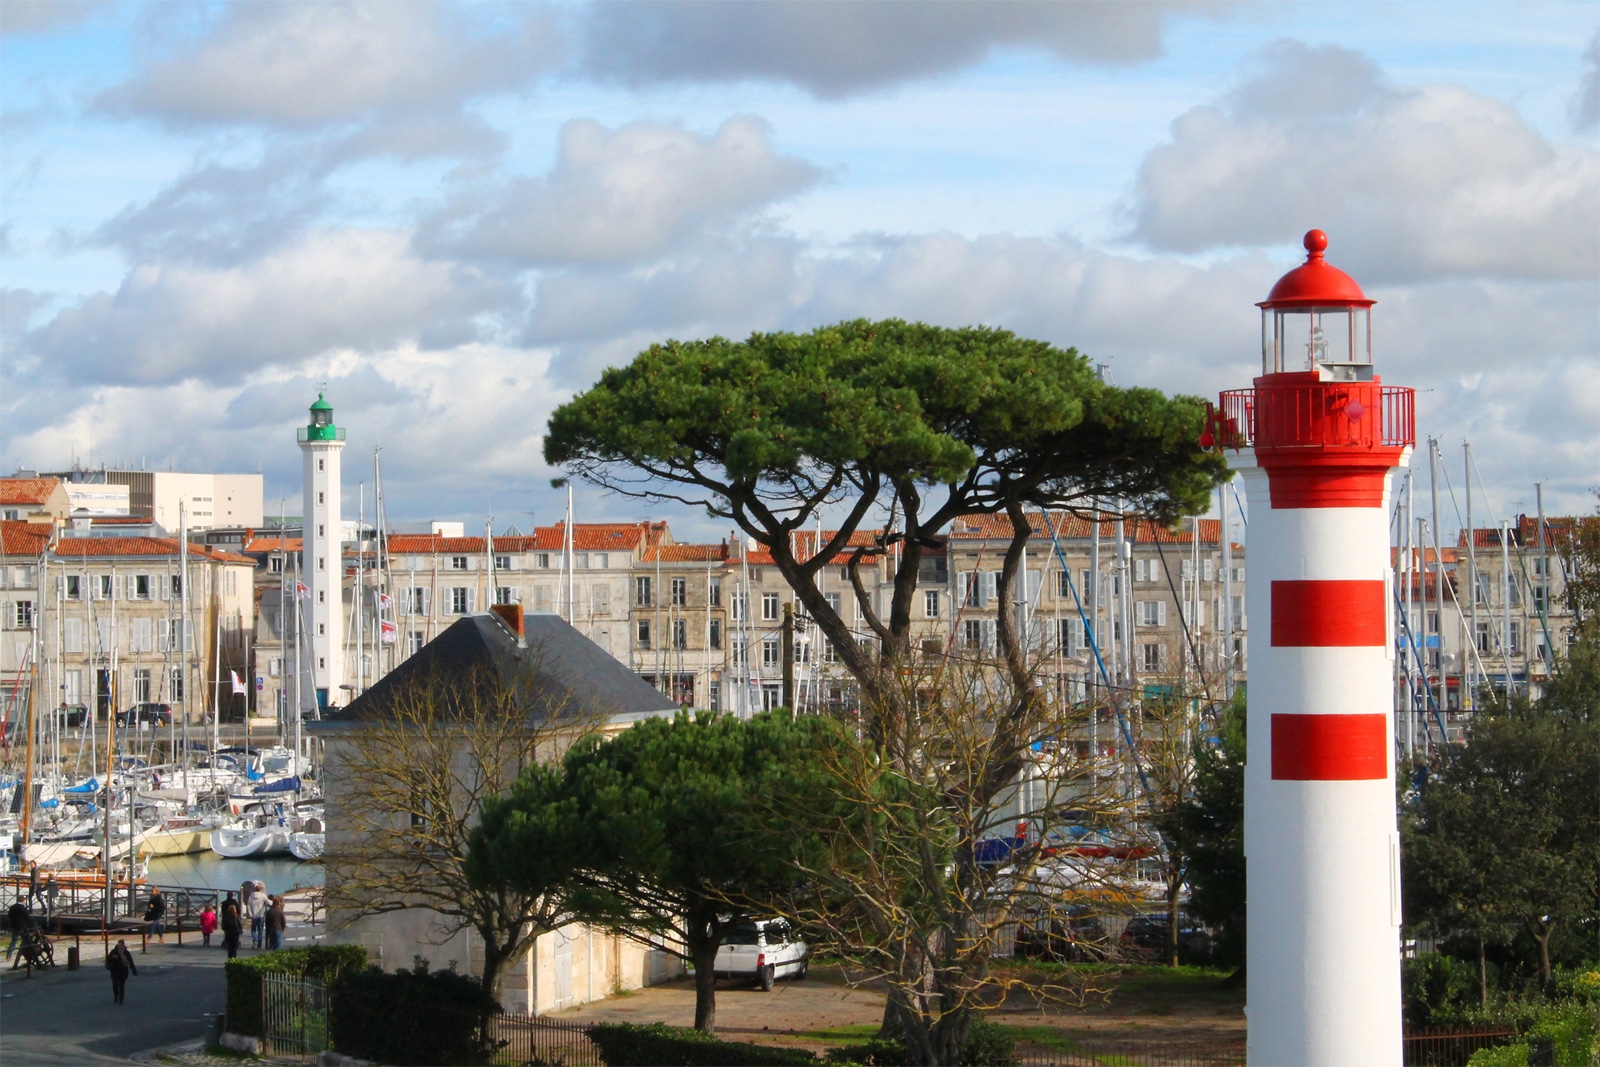 7 phares incontournables à découvrir en Charente-Maritime